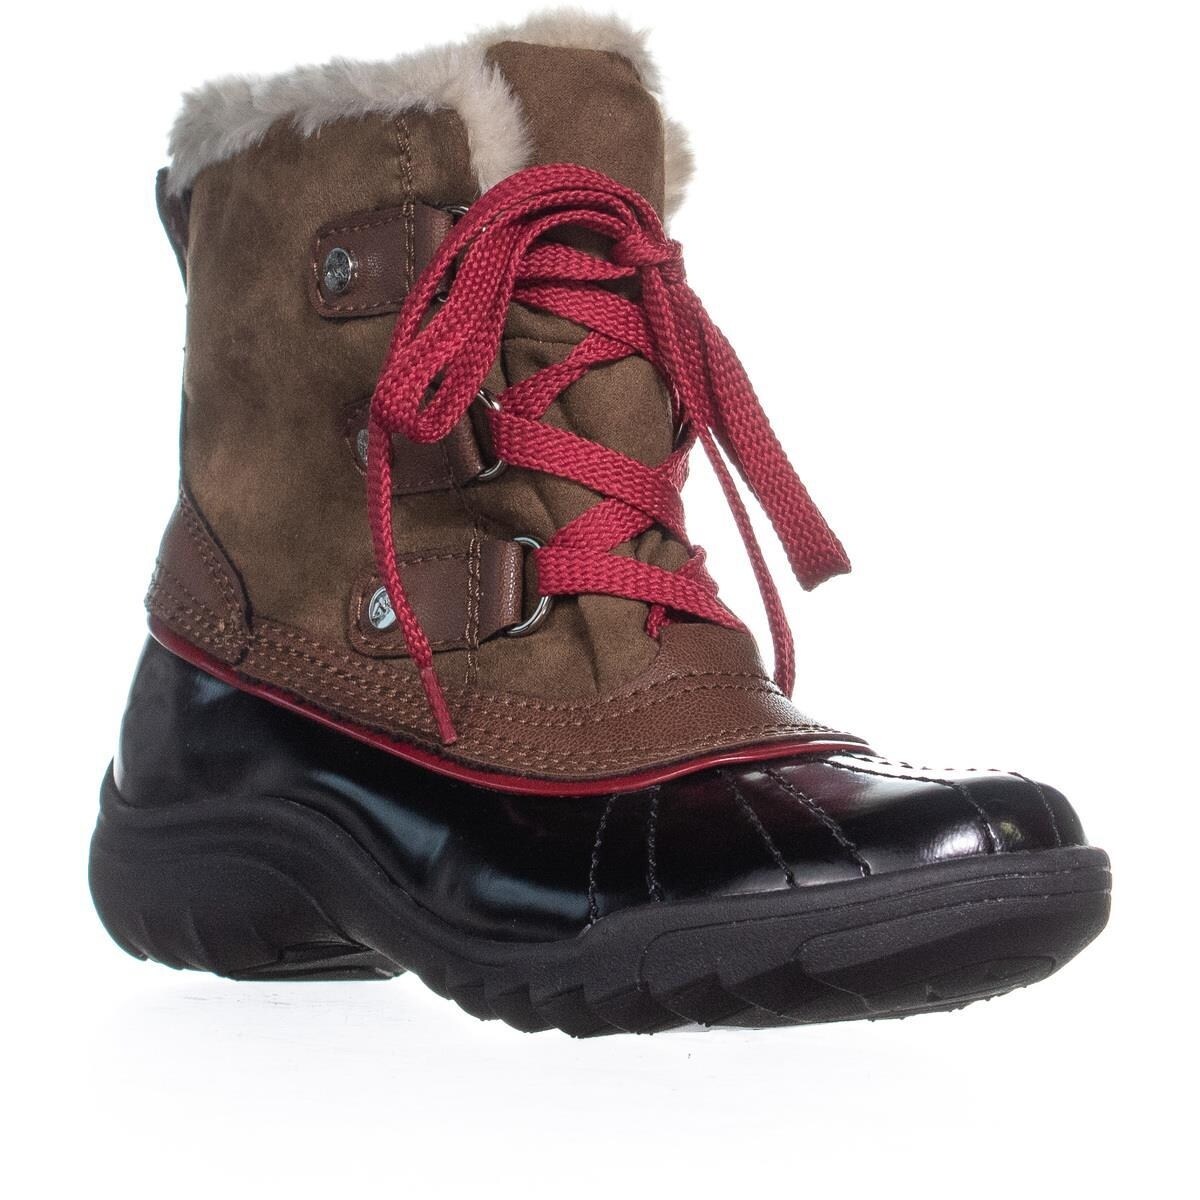 anne klein sport winter boots